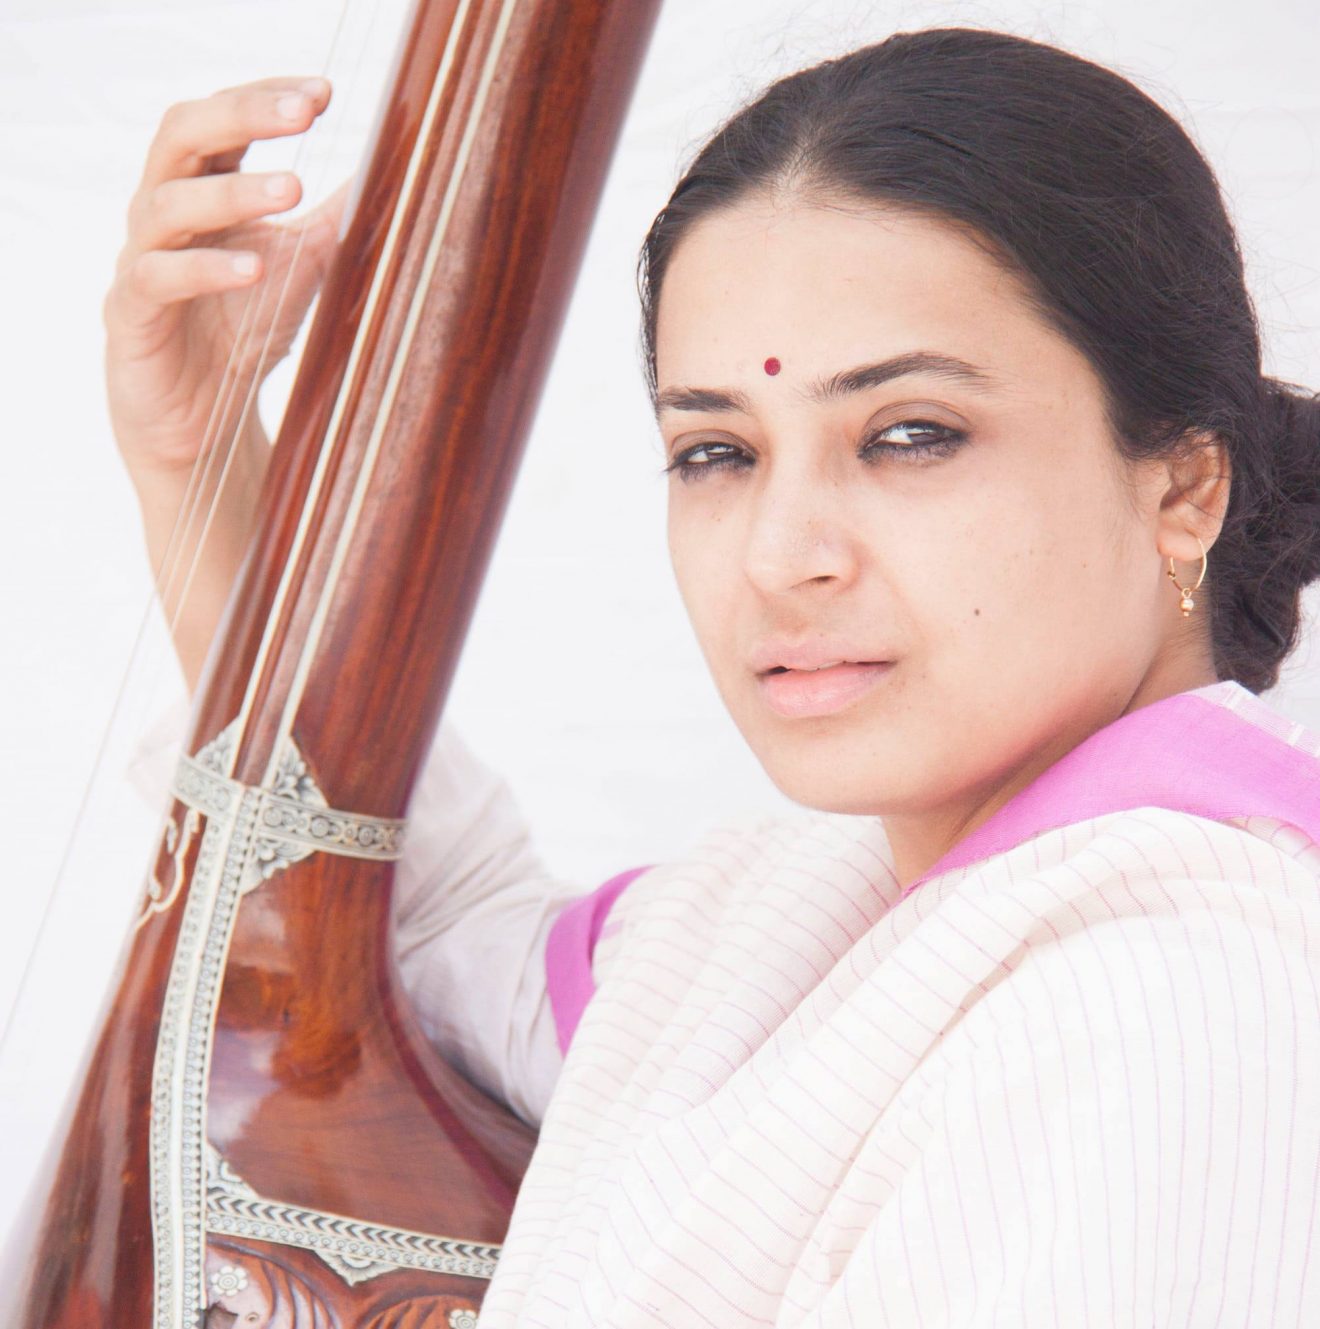 La Montagne Magique propose des concerts, retraites et ateliers de musique sacrée Dhrupad, de l'Inde du Nord